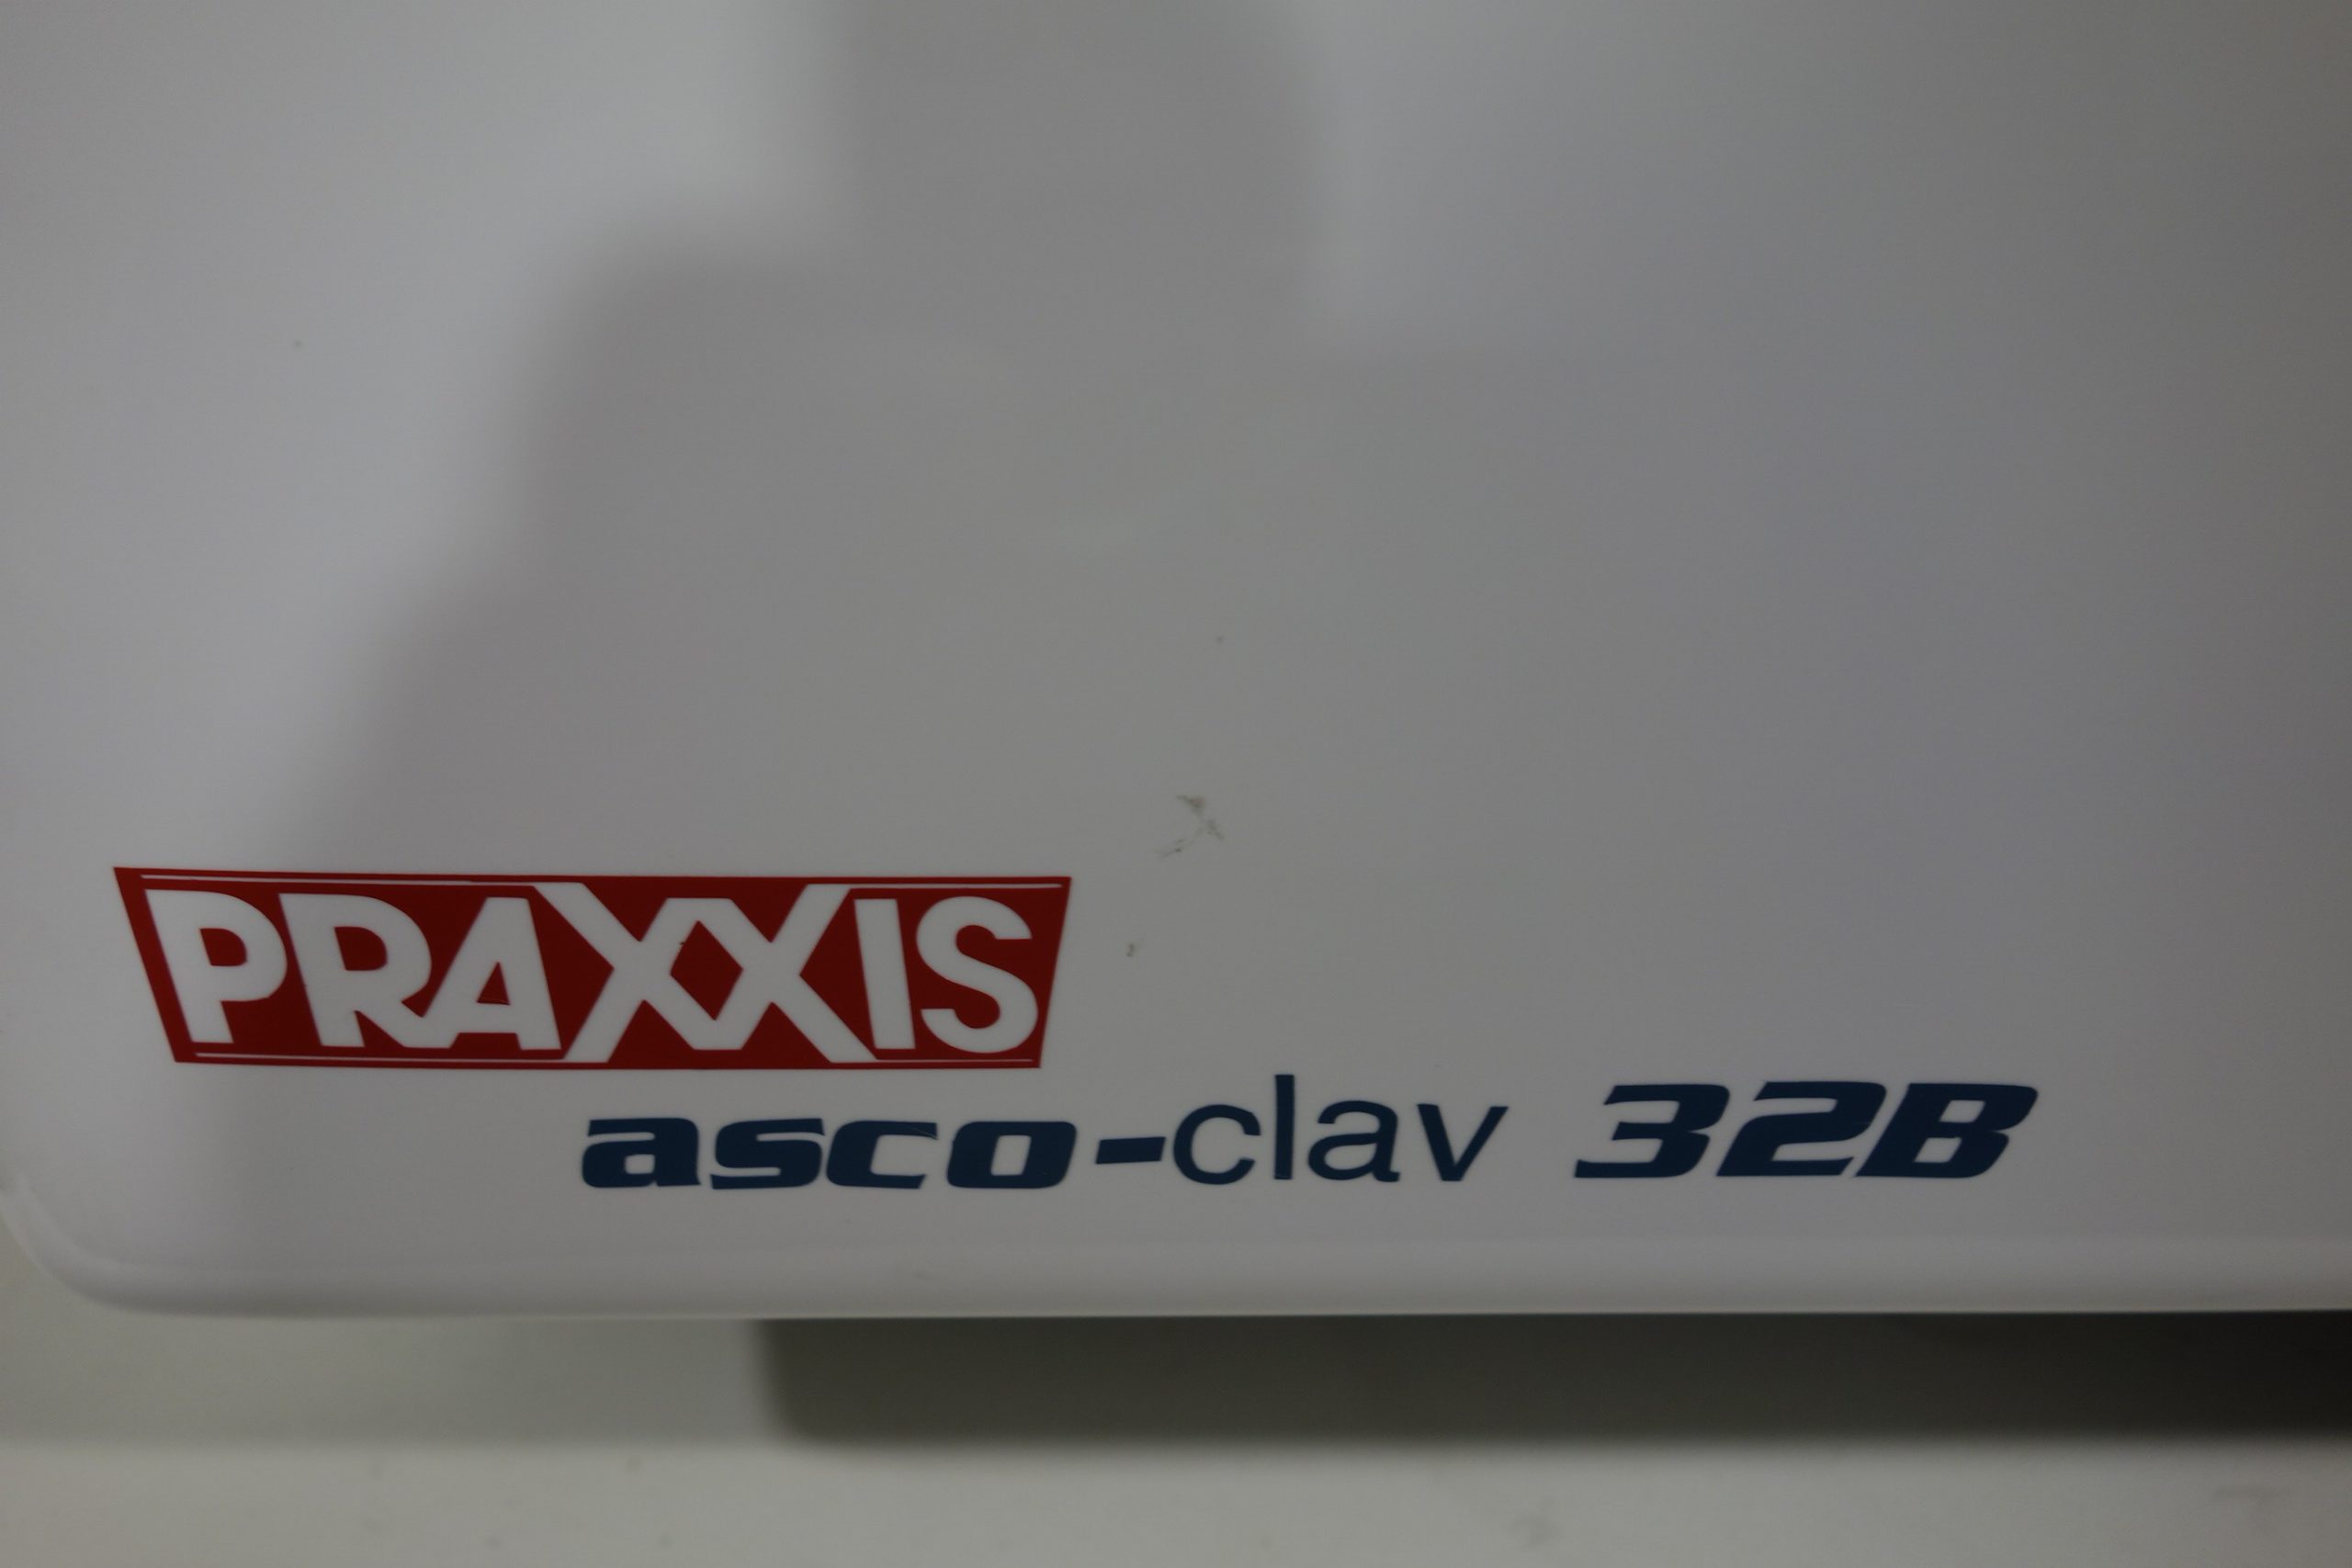 praxxis-asco-clav-32b-steri-melag-sterilisator-4639